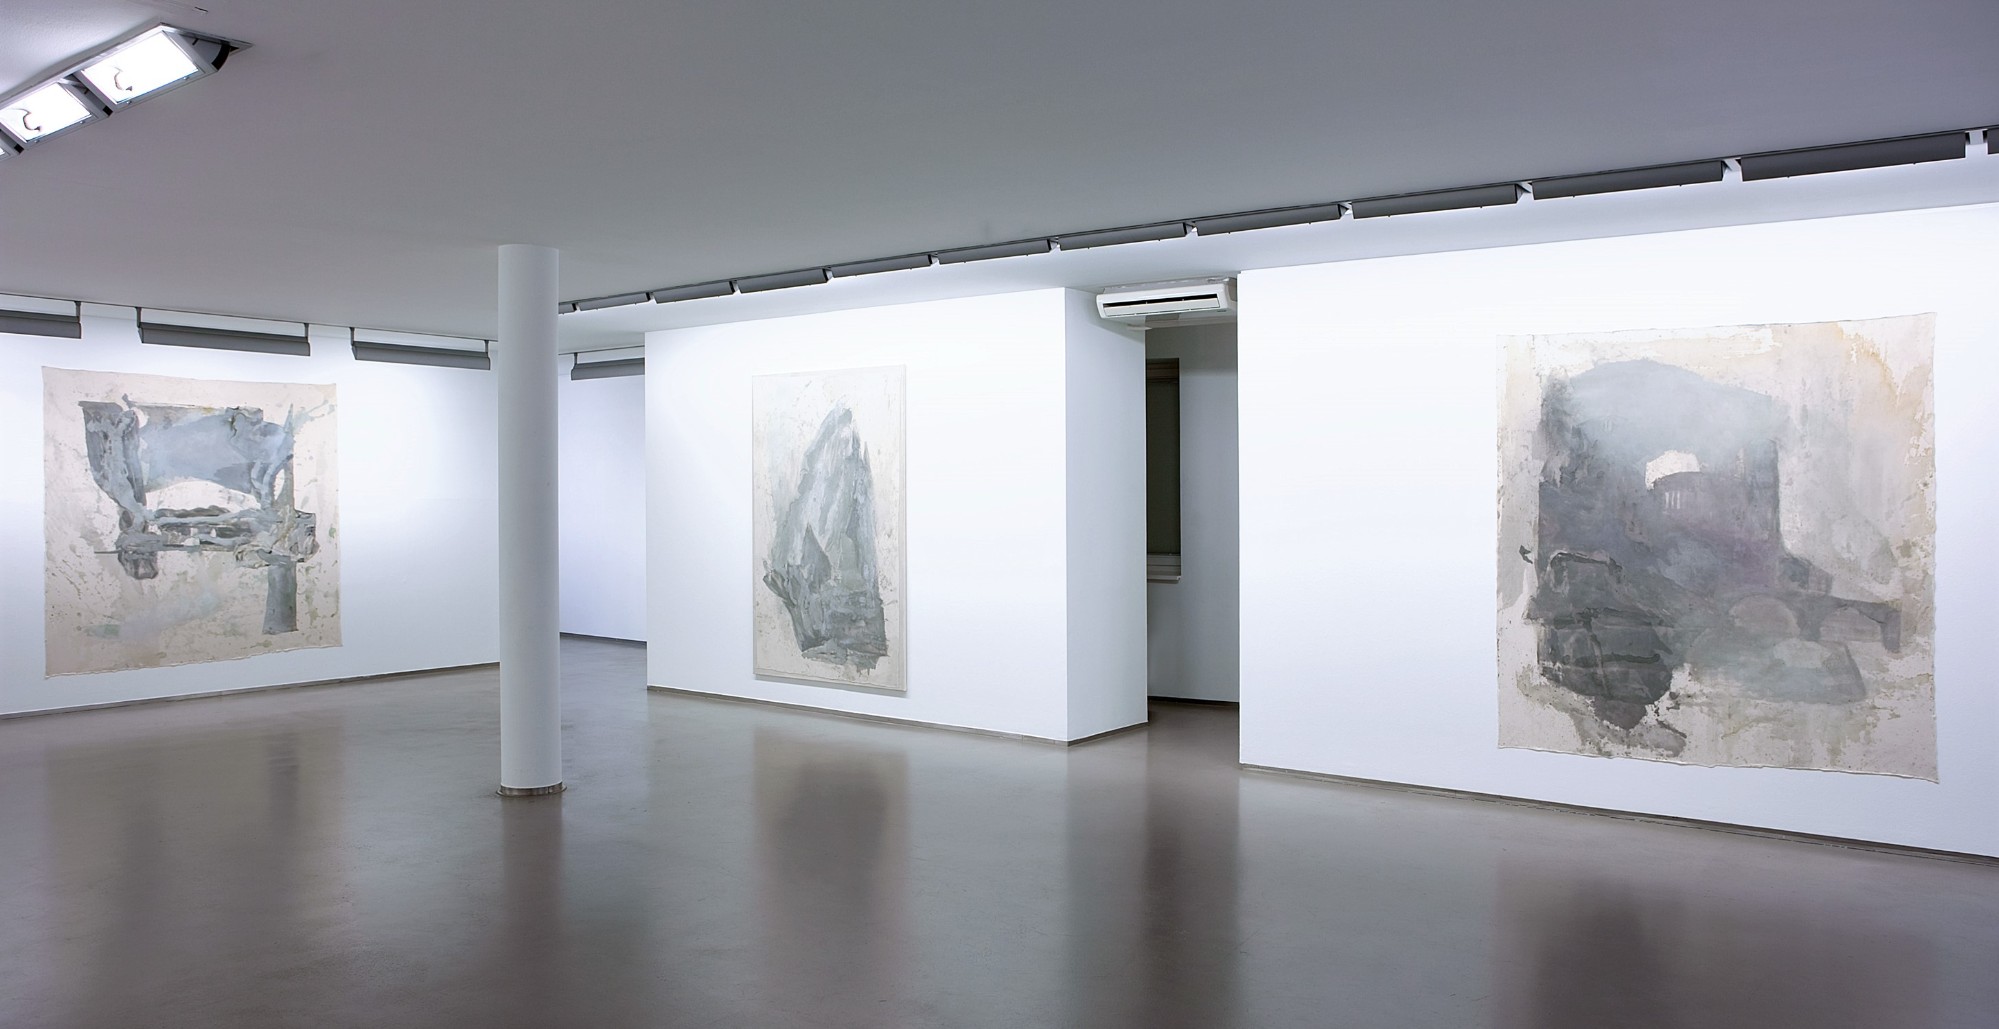 Erwin Gross, Von Abend zu Abend, Exhibition view, 2010